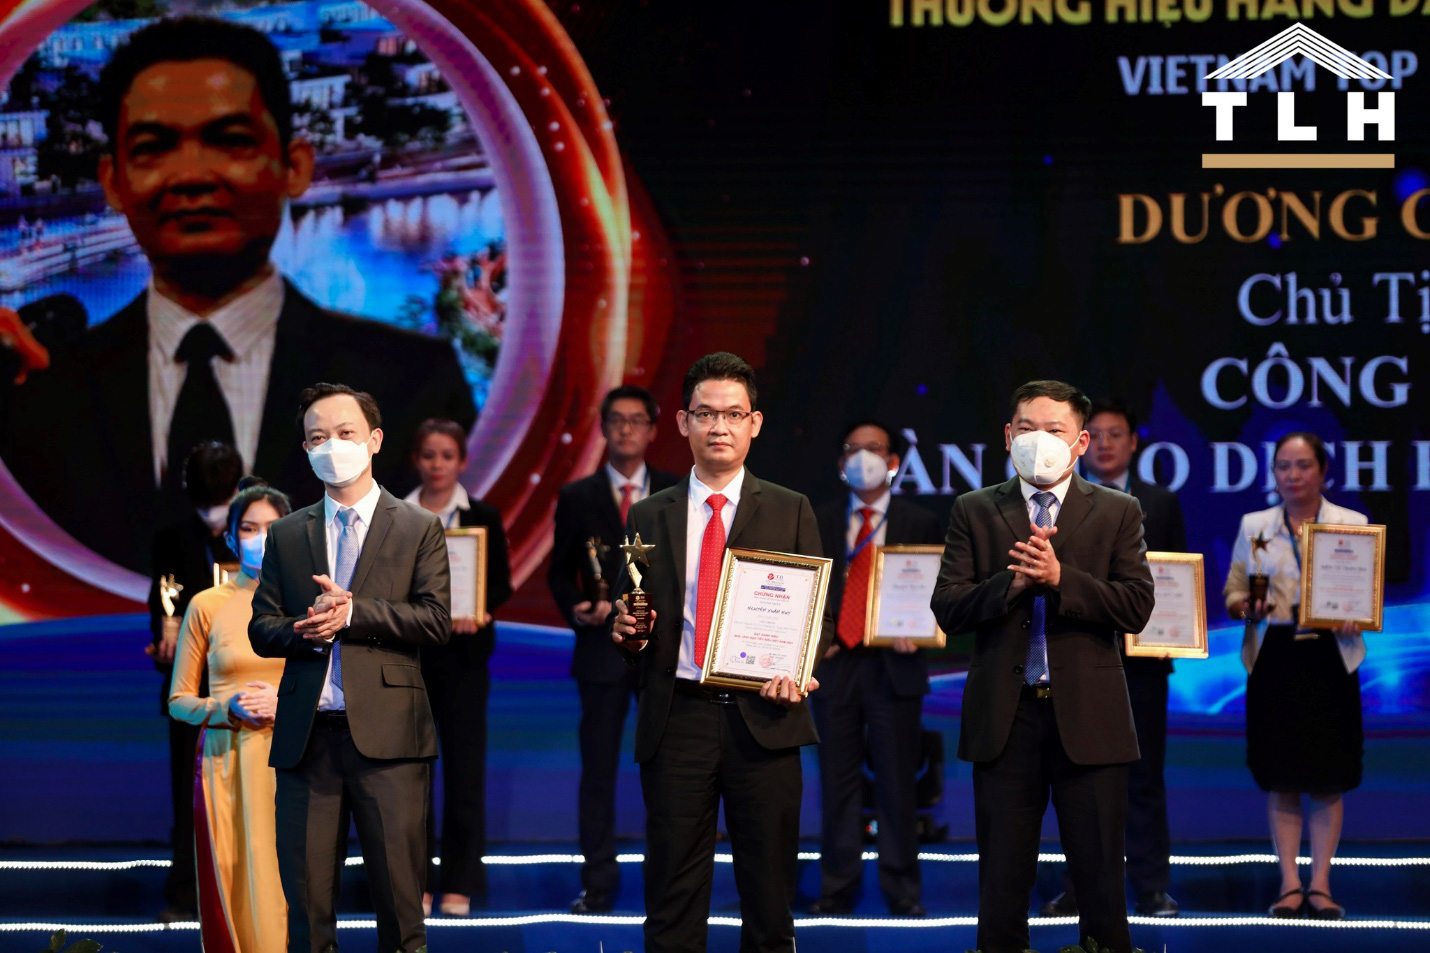 Công ty TLH nhận cú đúp giải thưởng tại “Thương hiệu hàng đầu Việt Nam 2021” - Ảnh 1.